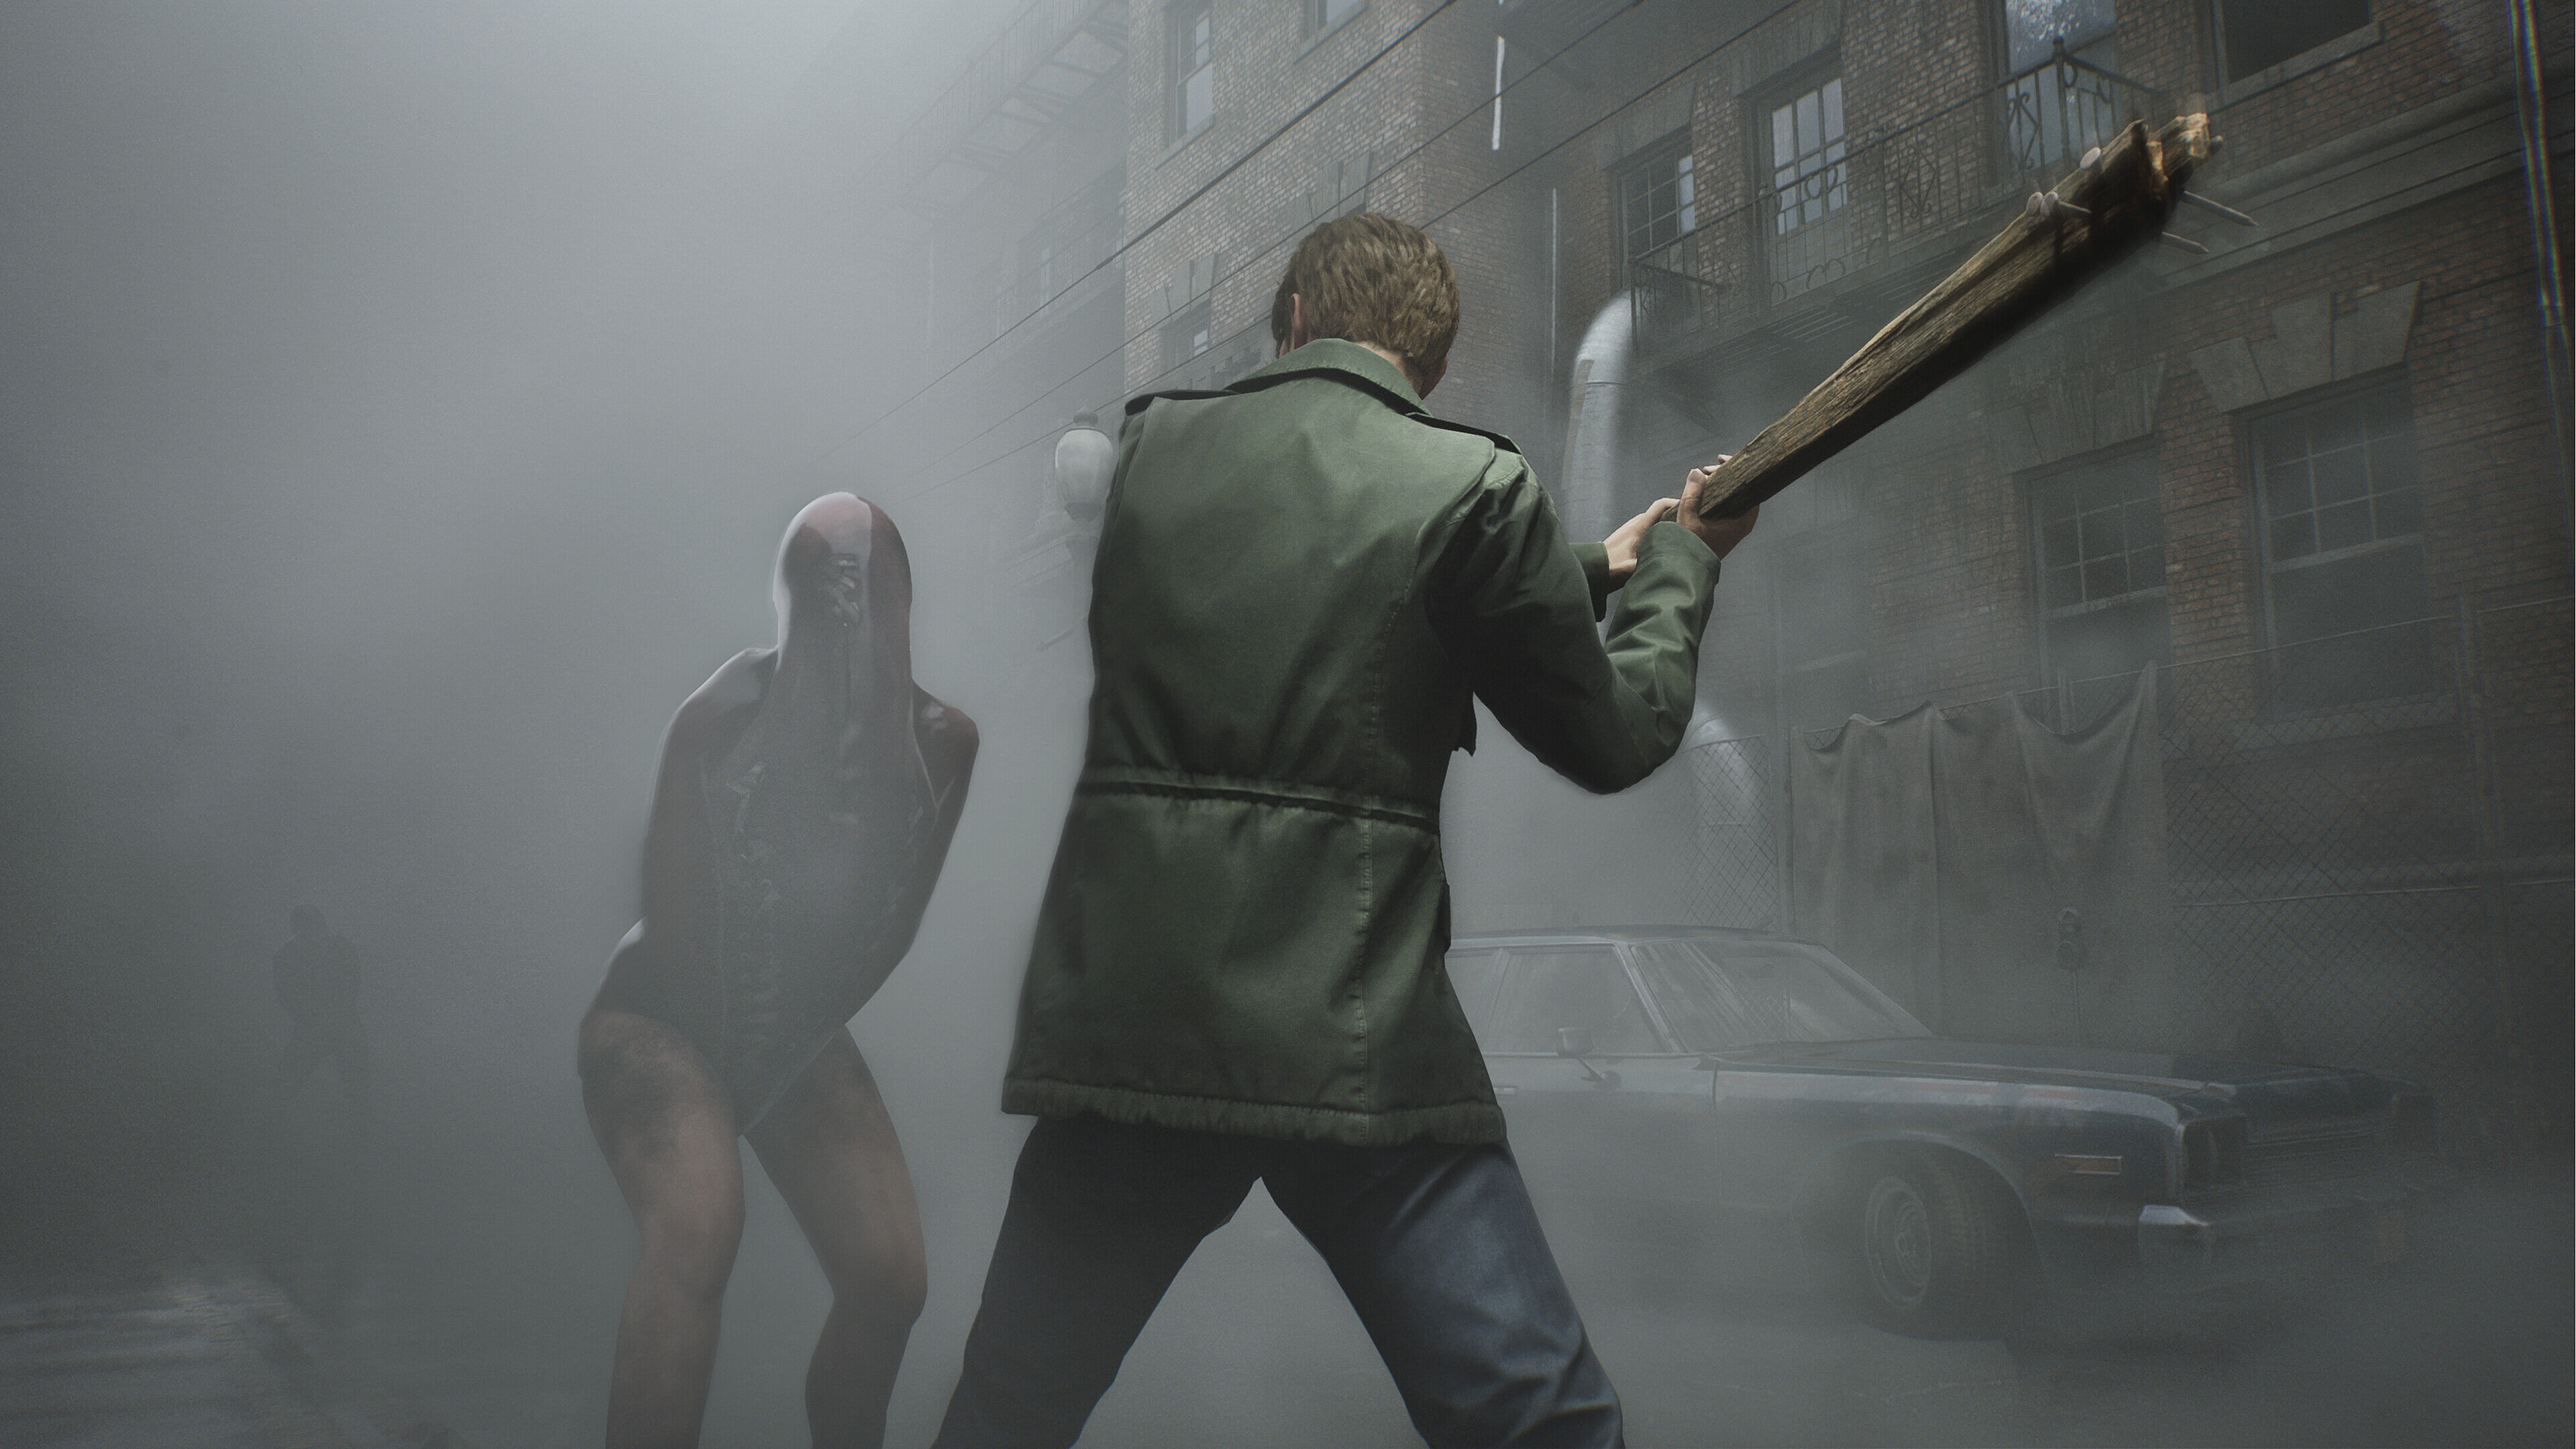 Silent Hill: site oficial é atualizado com tweet misterioso